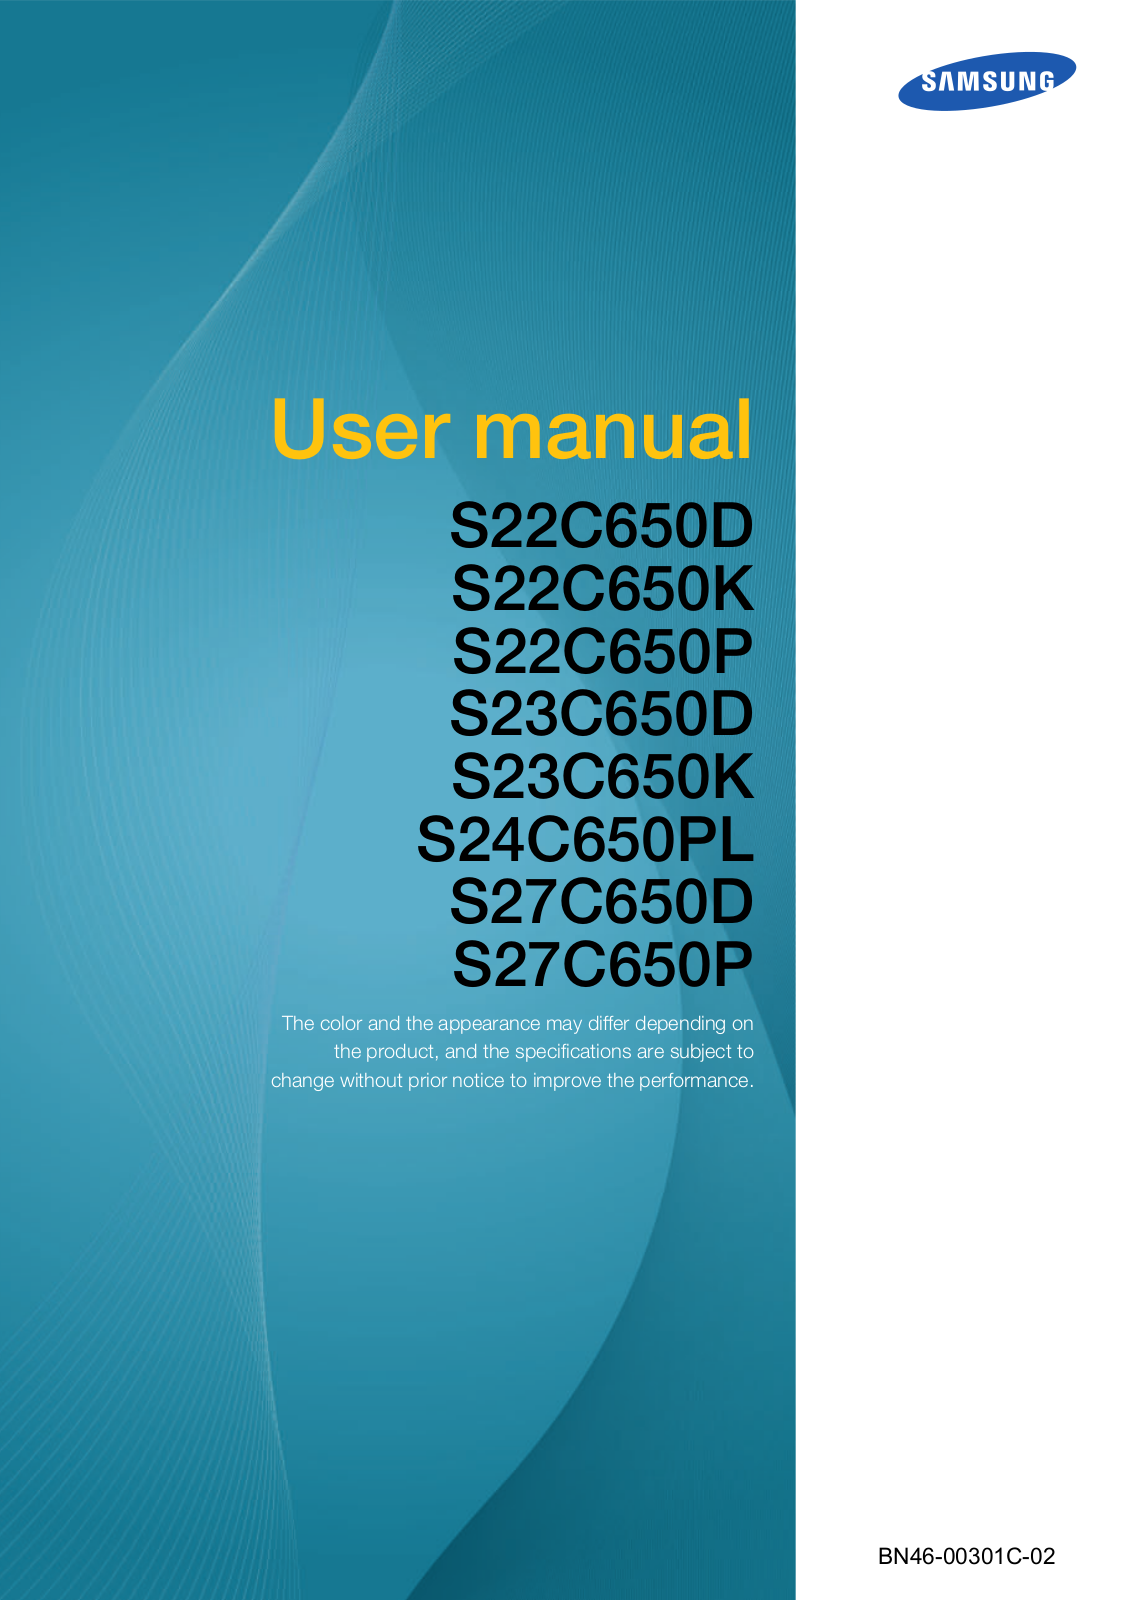 Samsung S27C650D, S23C650K, S22C650K, S22C650D User Manual